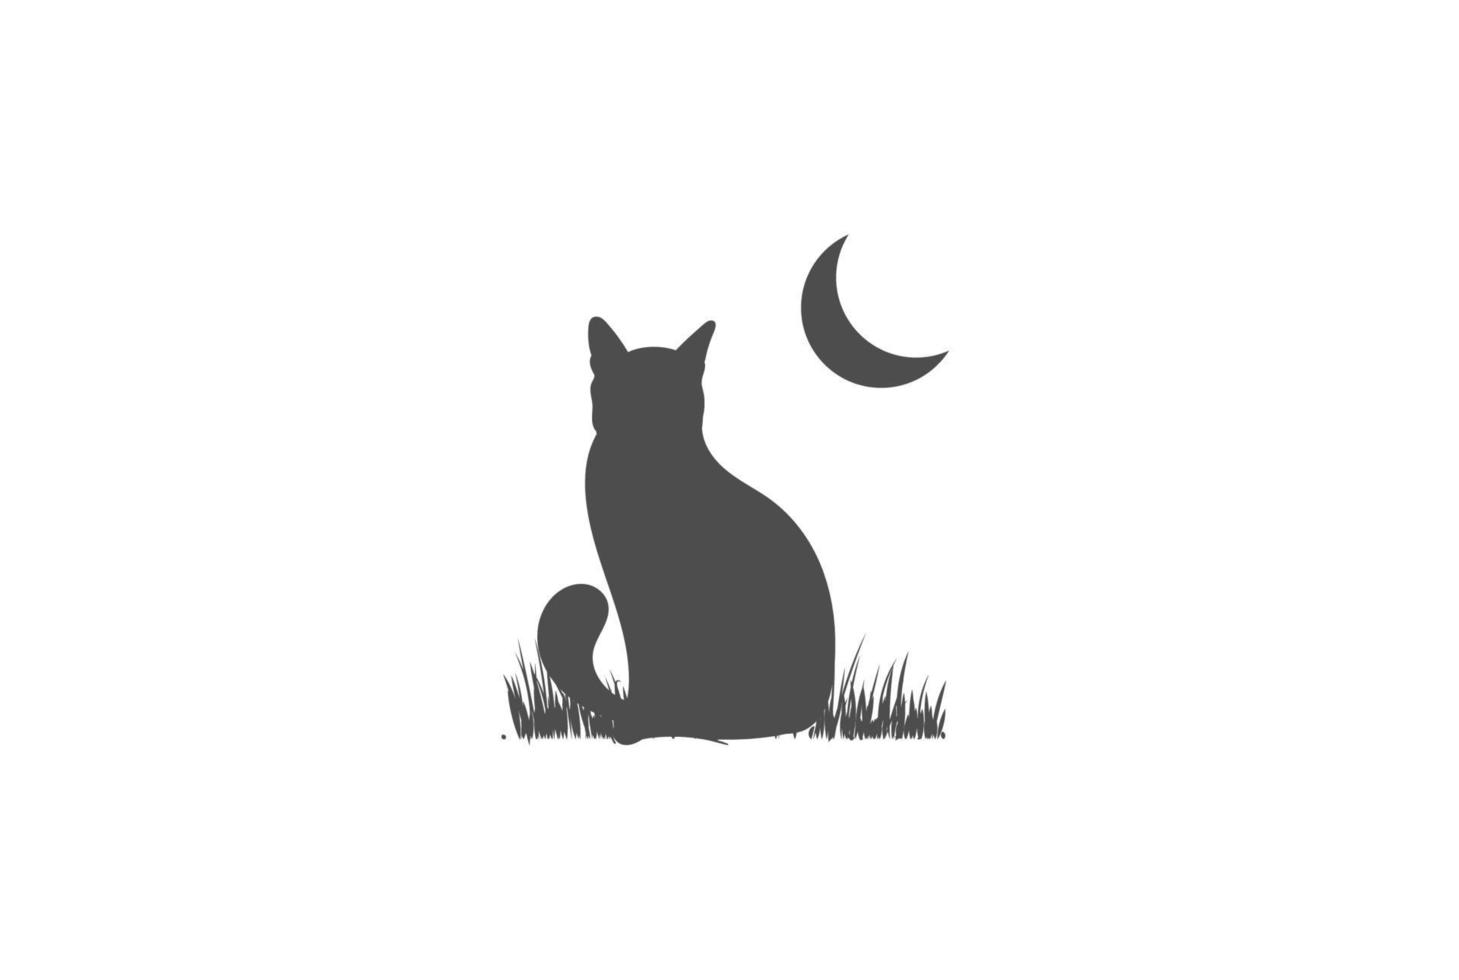 silueta de gato sentado simple con vector de diseño de logotipo de hierba y luna creciente